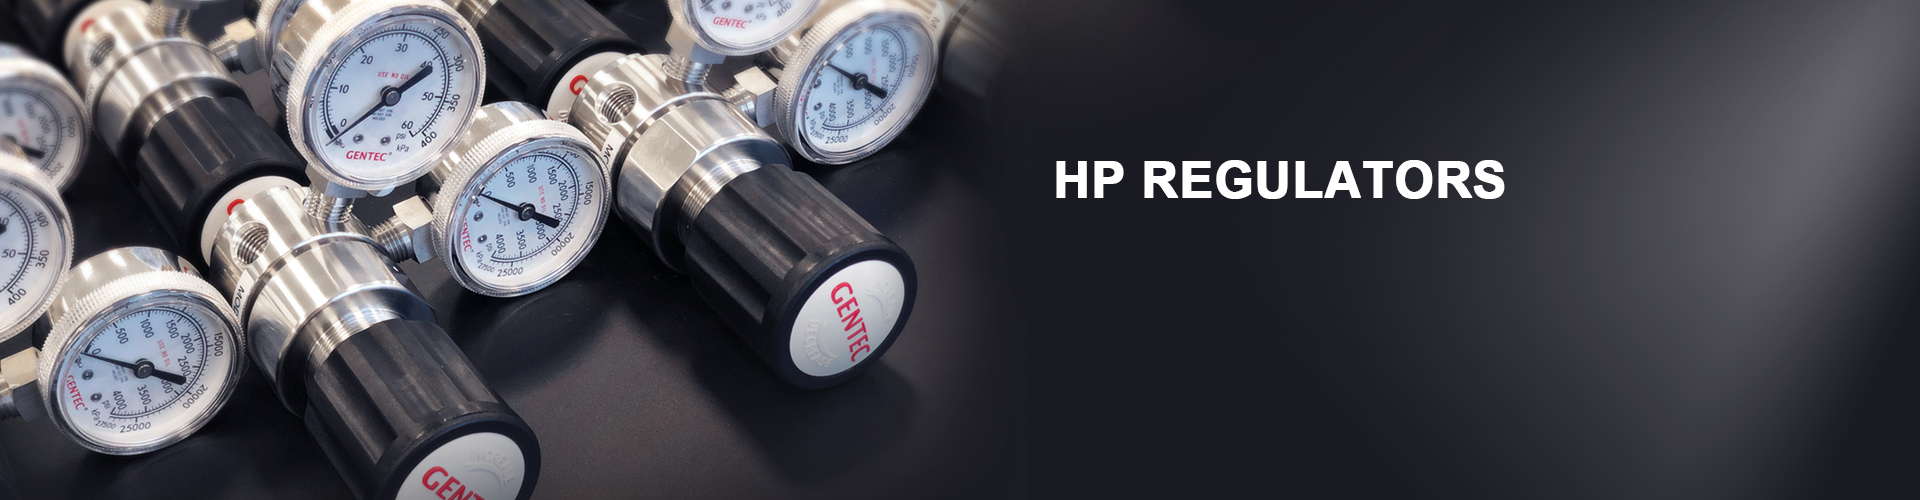 HP Regulators